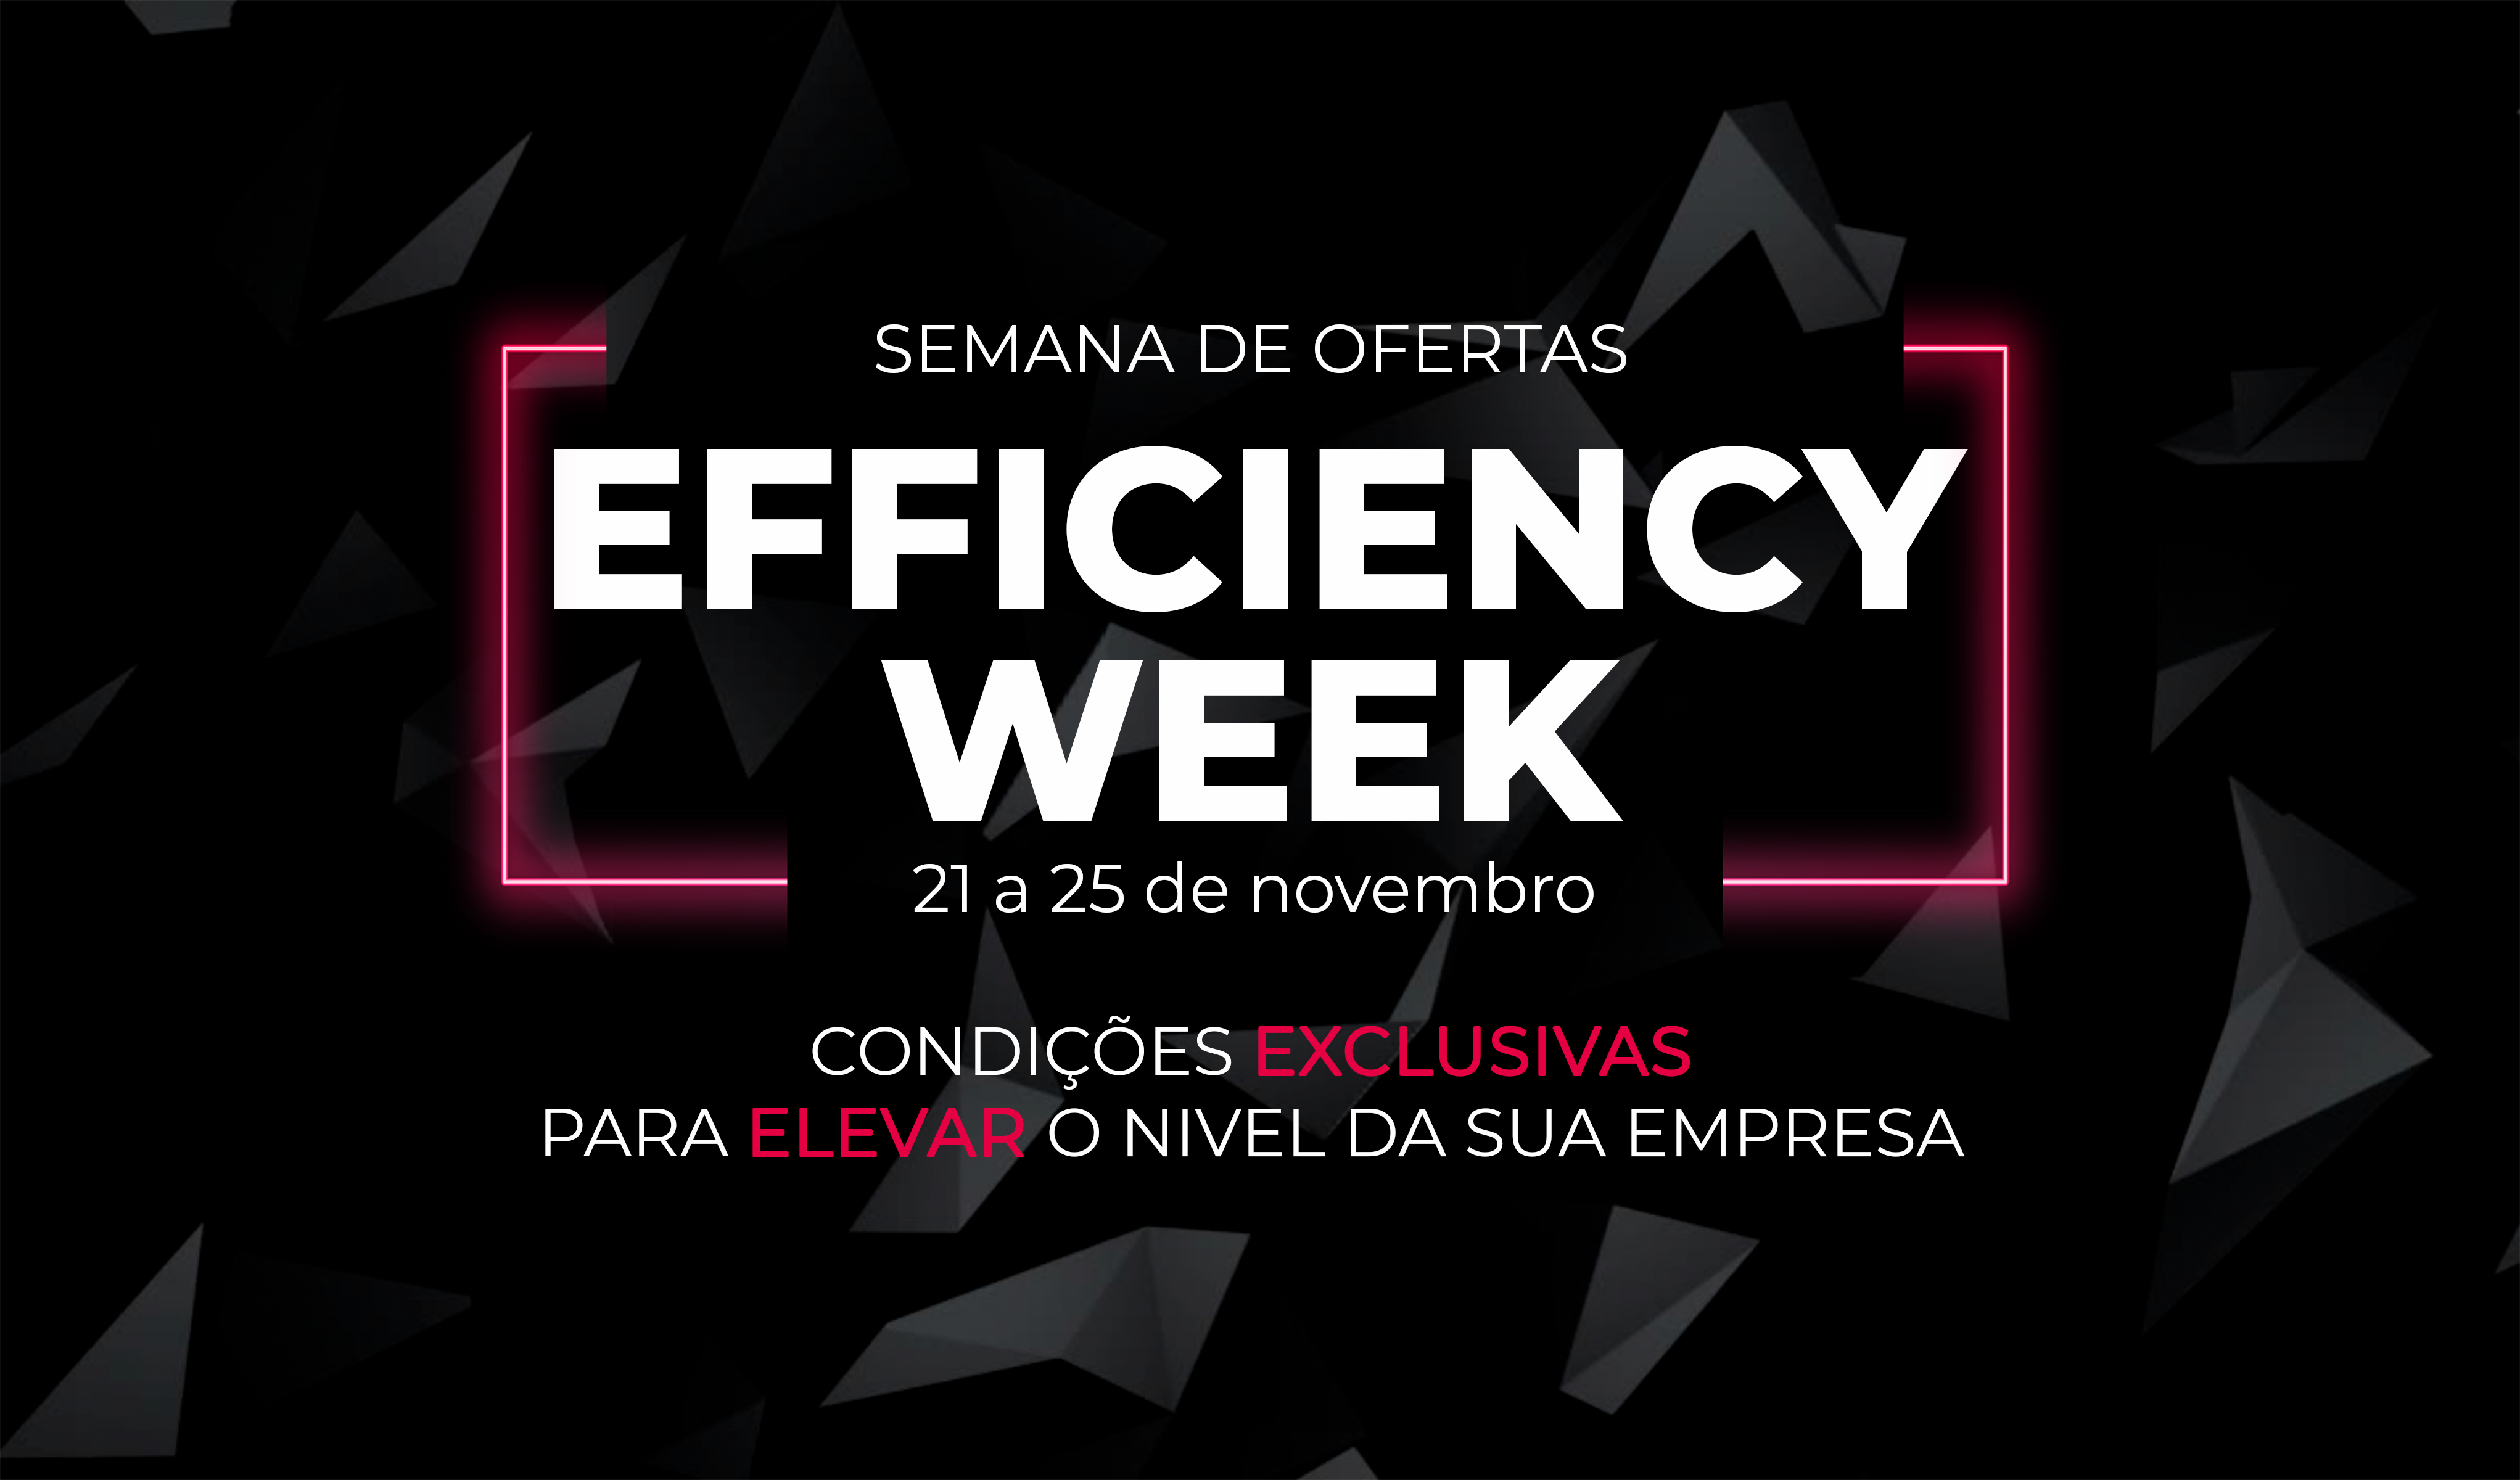 Dizeres: Semana de ofertas Efficiency Week - 21 a 25 de novembro - condições exclusivas para elevar o nível da sua empresa